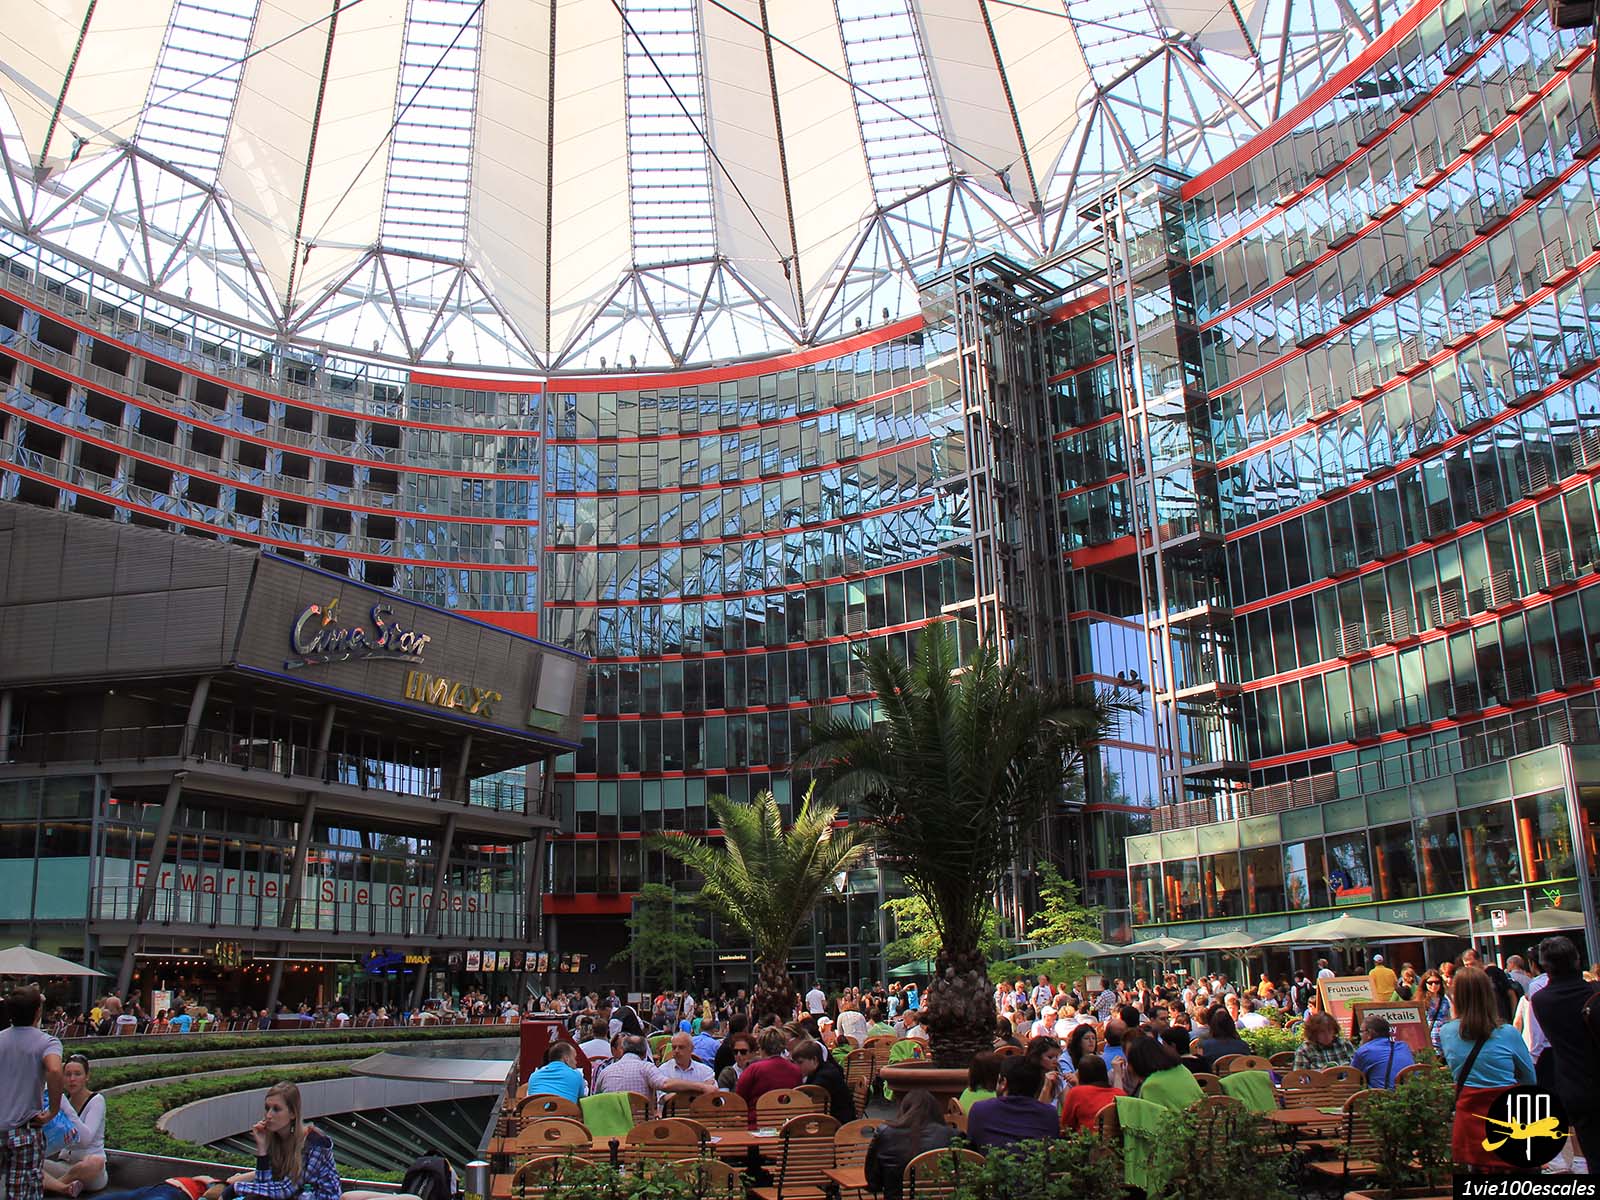 Attraction à part entière de la Potsdamer Platz, le Sony-Center, est un ensemble de bâtiments abritant un grand forum, des cafés, restaurants, boutiques et cinéma